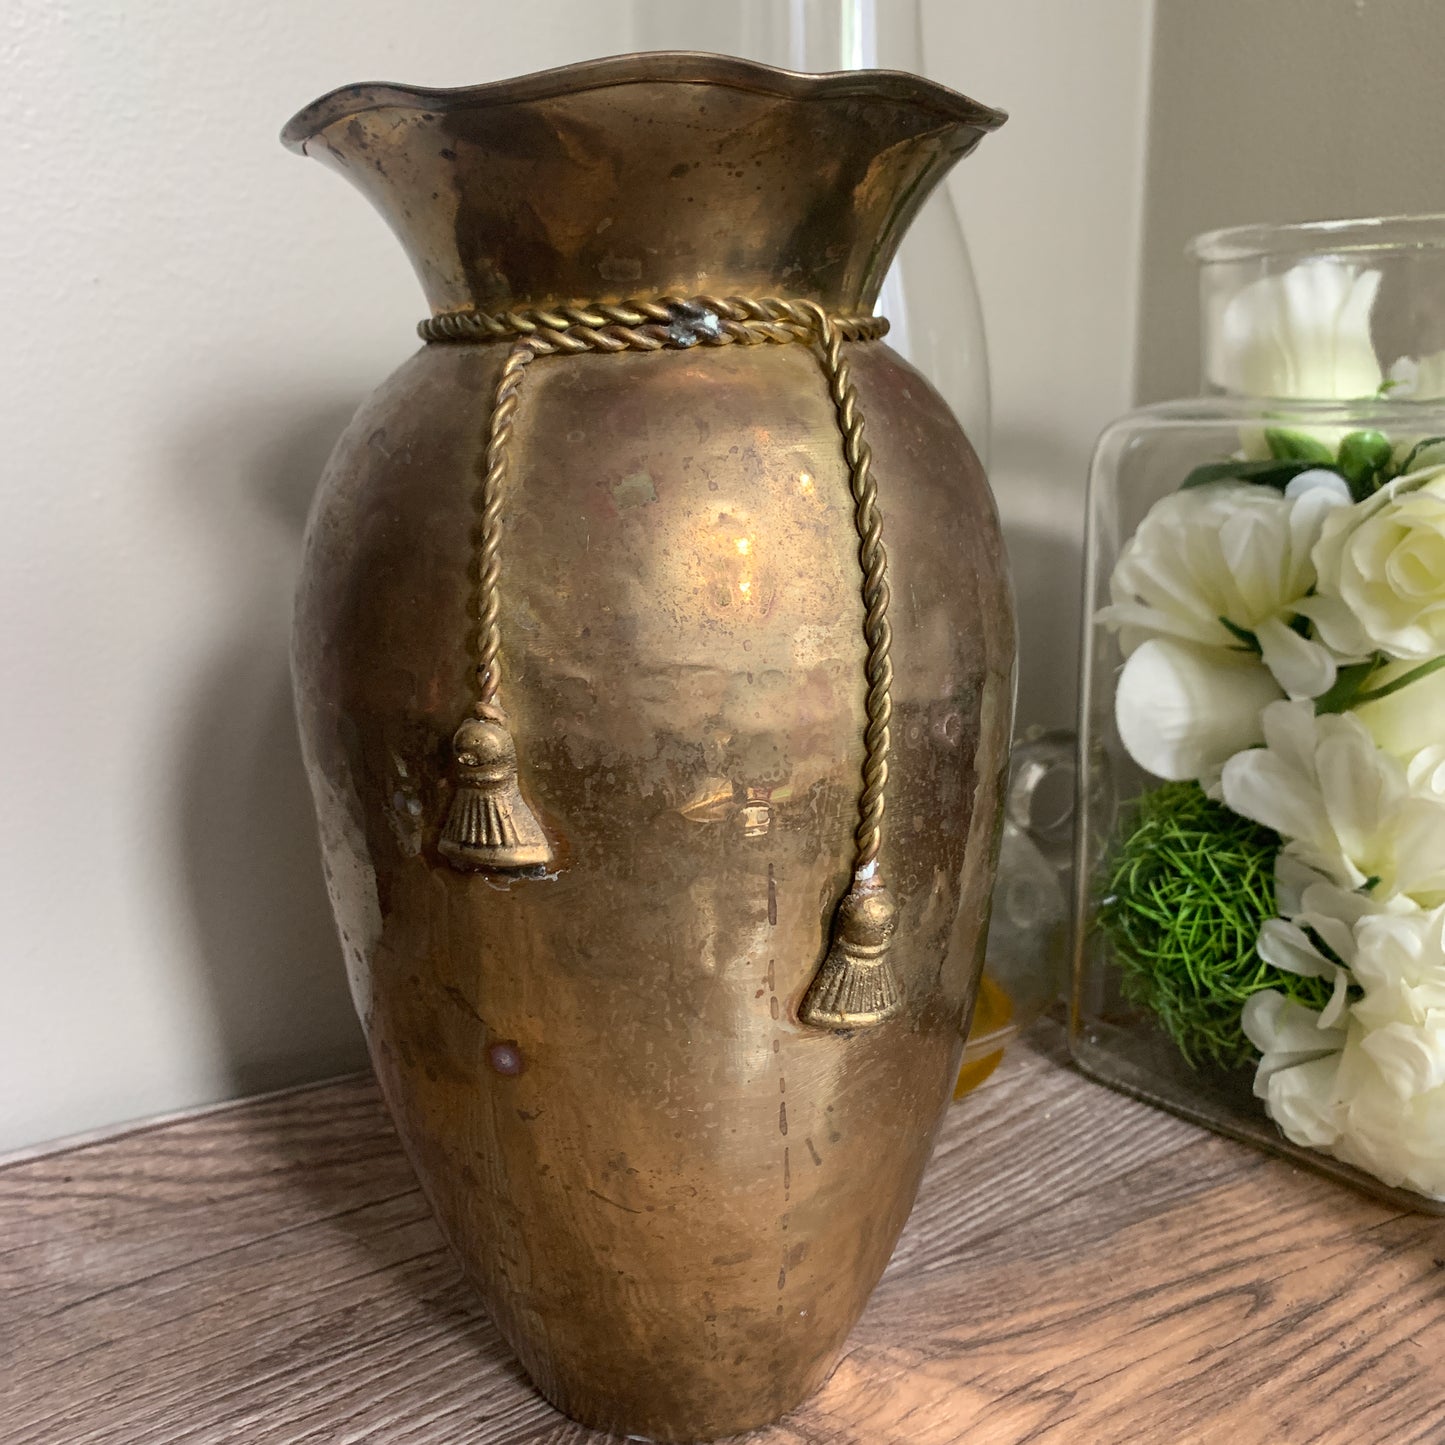 Tall Brass Vase with Tassels, Vintage Brass Planter